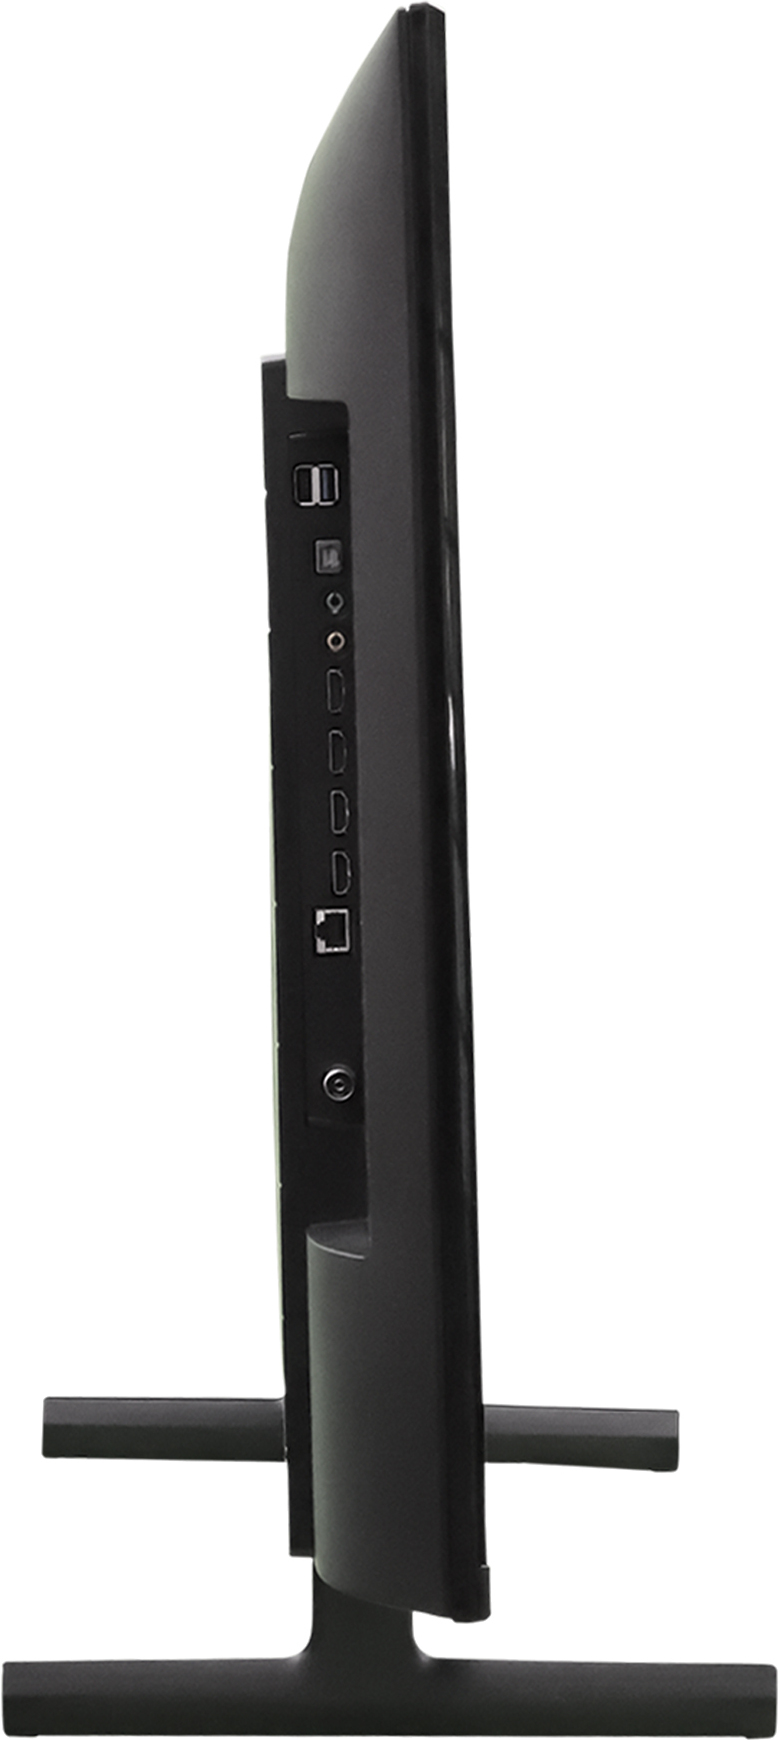 SONY  X80L (43 inch) Ultra HD (4K) (KD-43X80L)